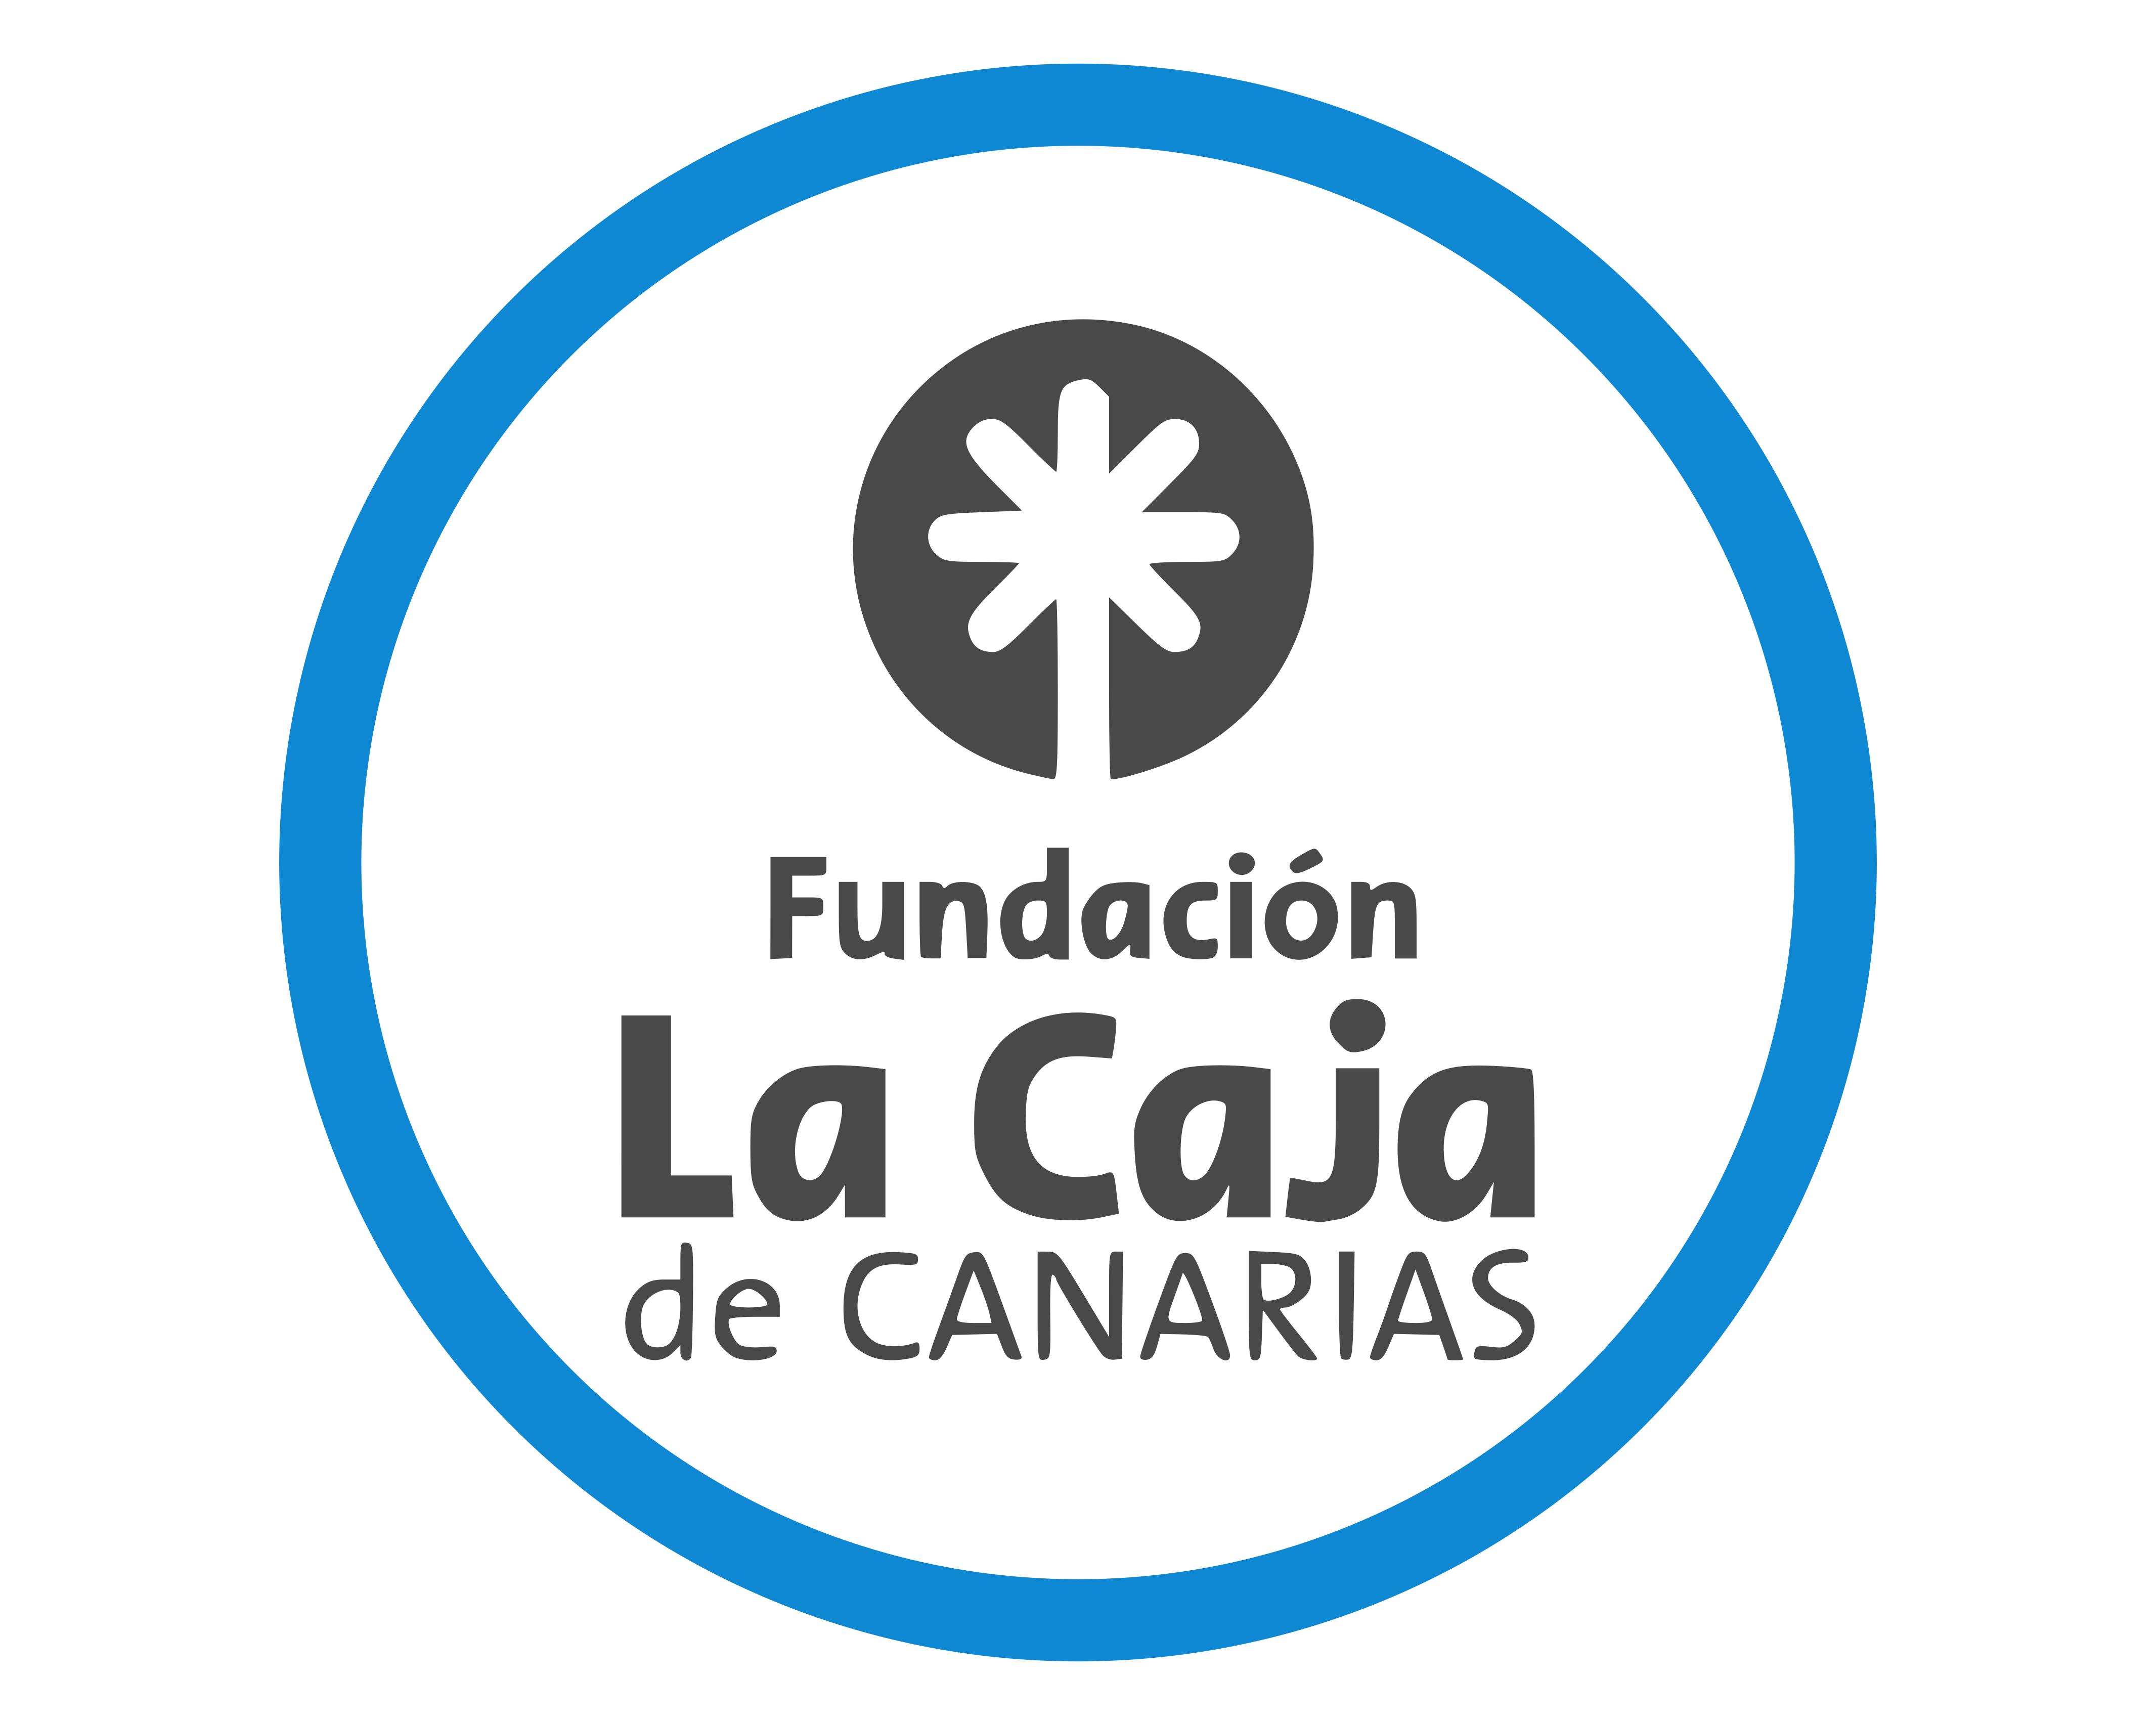 Fundación La Caja de Canarias